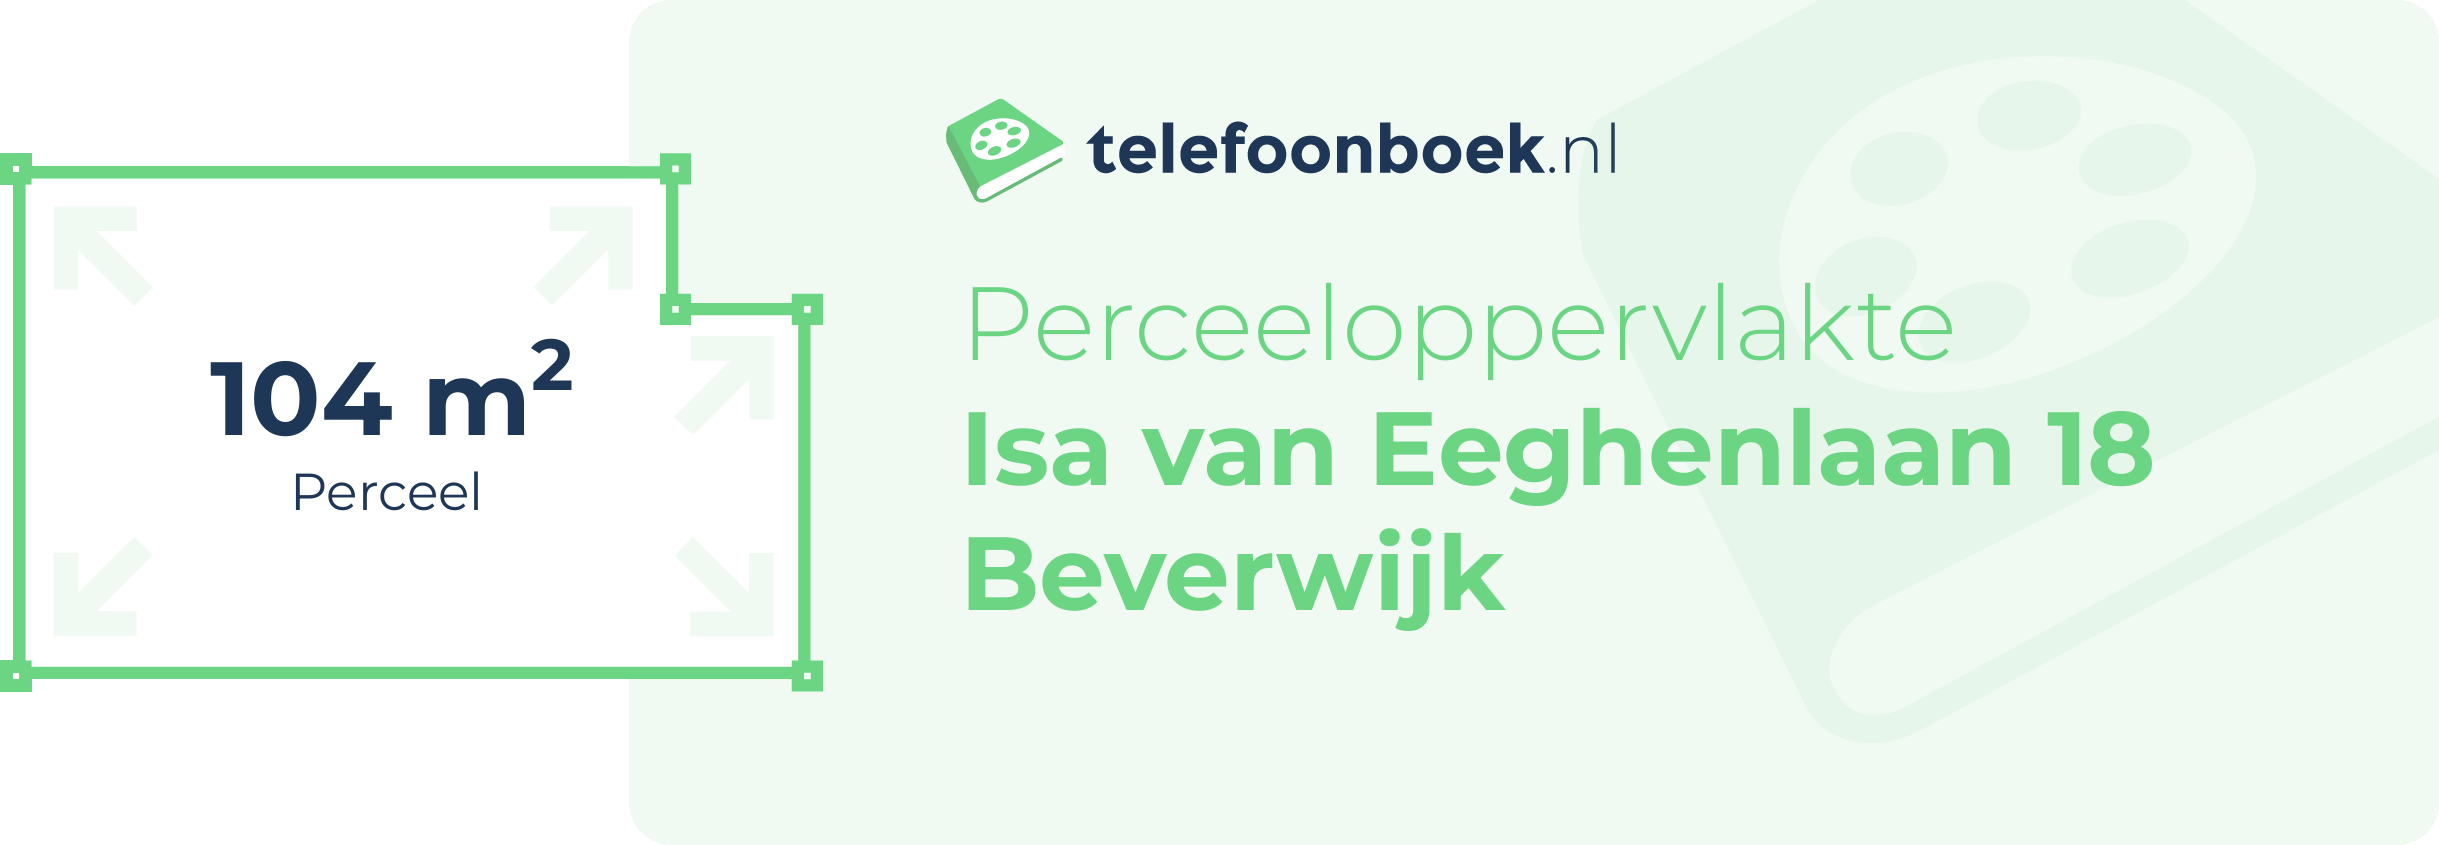 Perceeloppervlakte Isa Van Eeghenlaan 18 Beverwijk